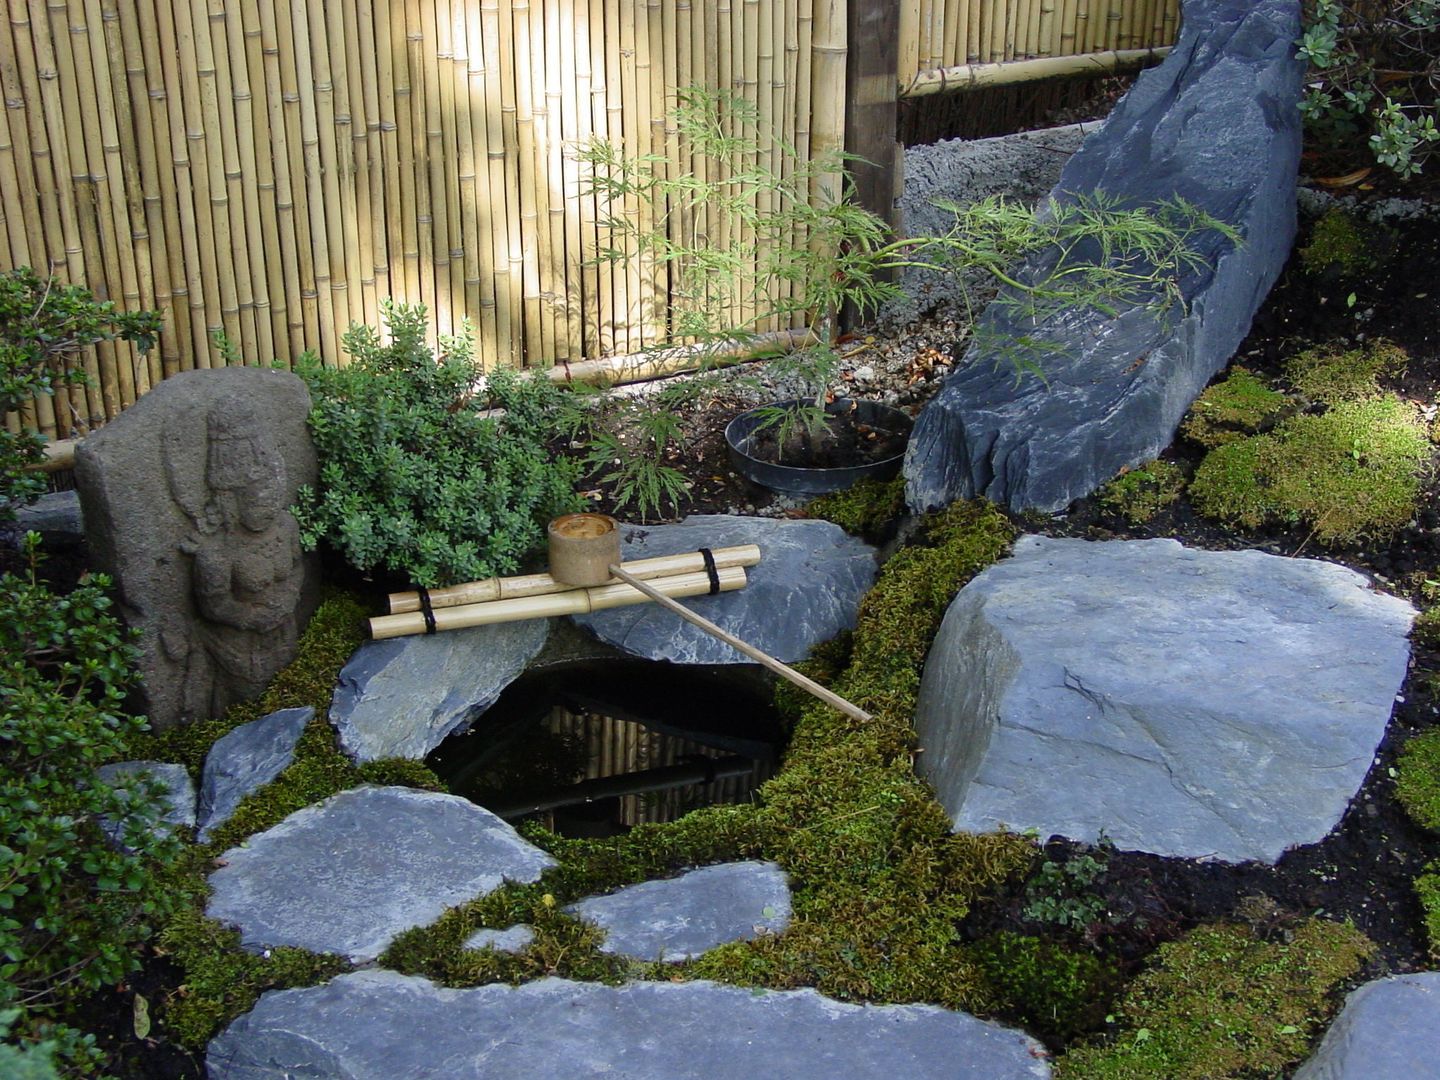 Wasser im Garten, Natur-Teiche, Schwimm-Teiche, Wasserfälle, Bachläufe, Tsukubai, japan-garten-kultur japan-garten-kultur 아시아스타일 정원